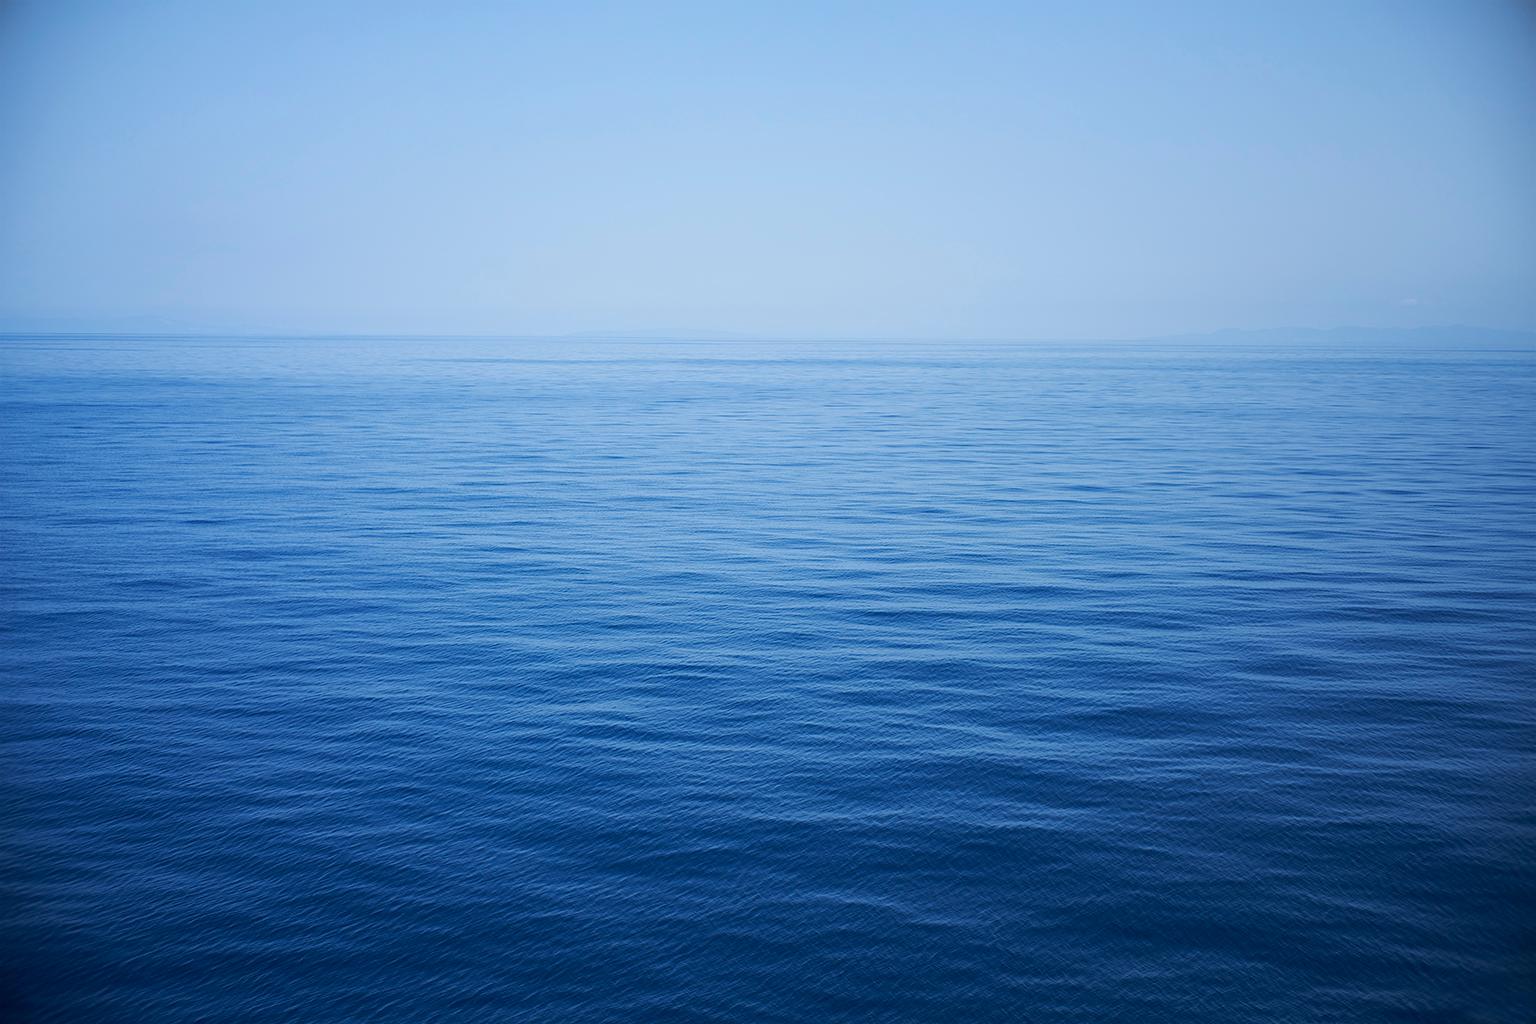 Color Photograph Frank Schott - Paysage marin X - photographie grand format de surface d'eau bleue monochrome et d'horizon